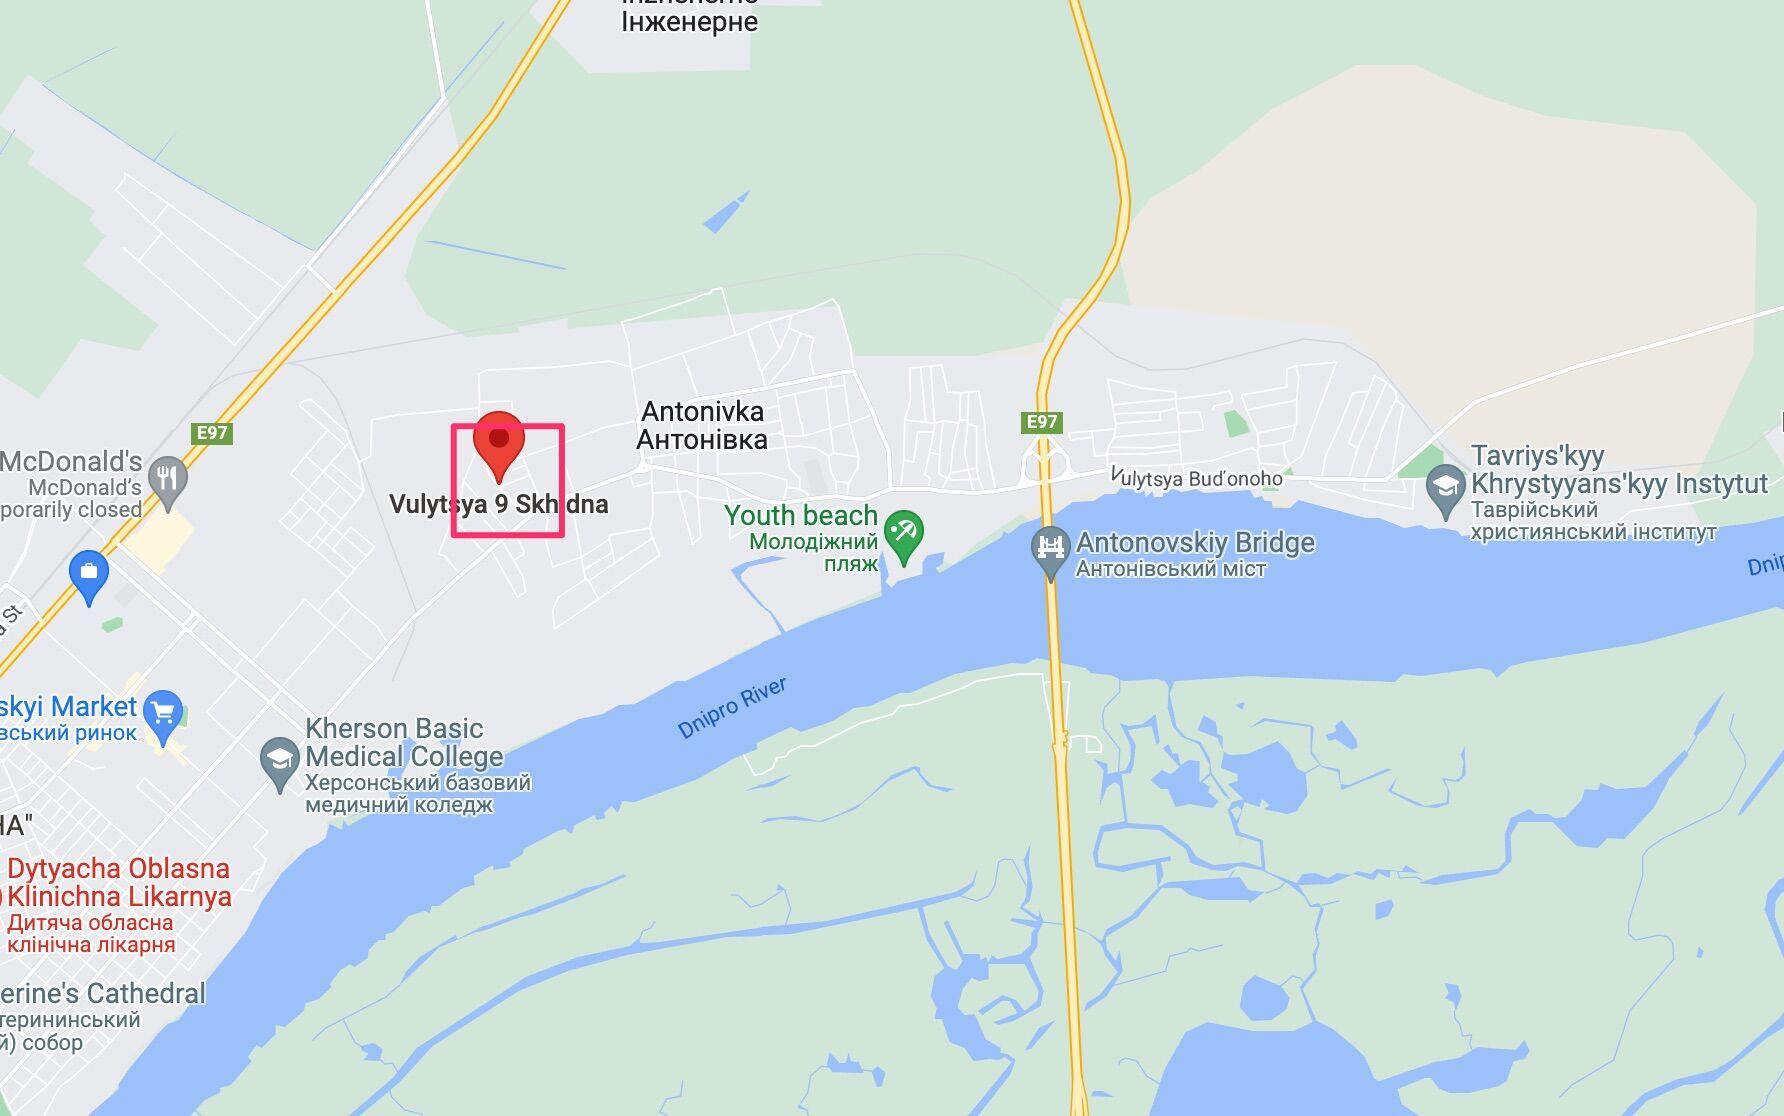 Окупанти посилили фільтрацію у районах поблизу Антонівського мосту